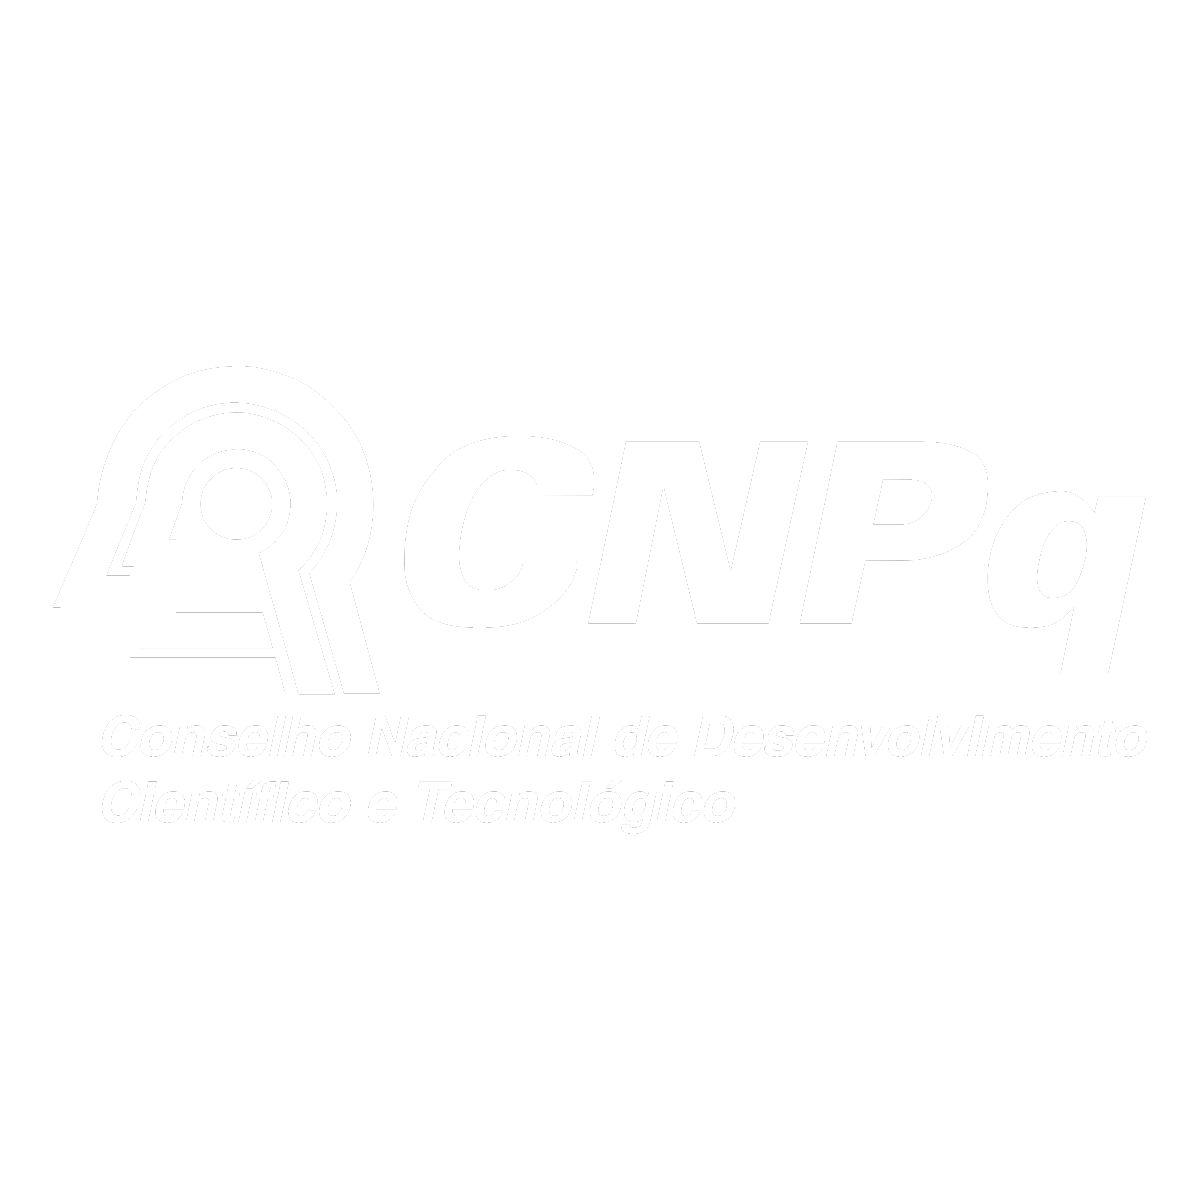 CNPq| Conselho Nacional de Desenvolvimento Científico e Tecnológico